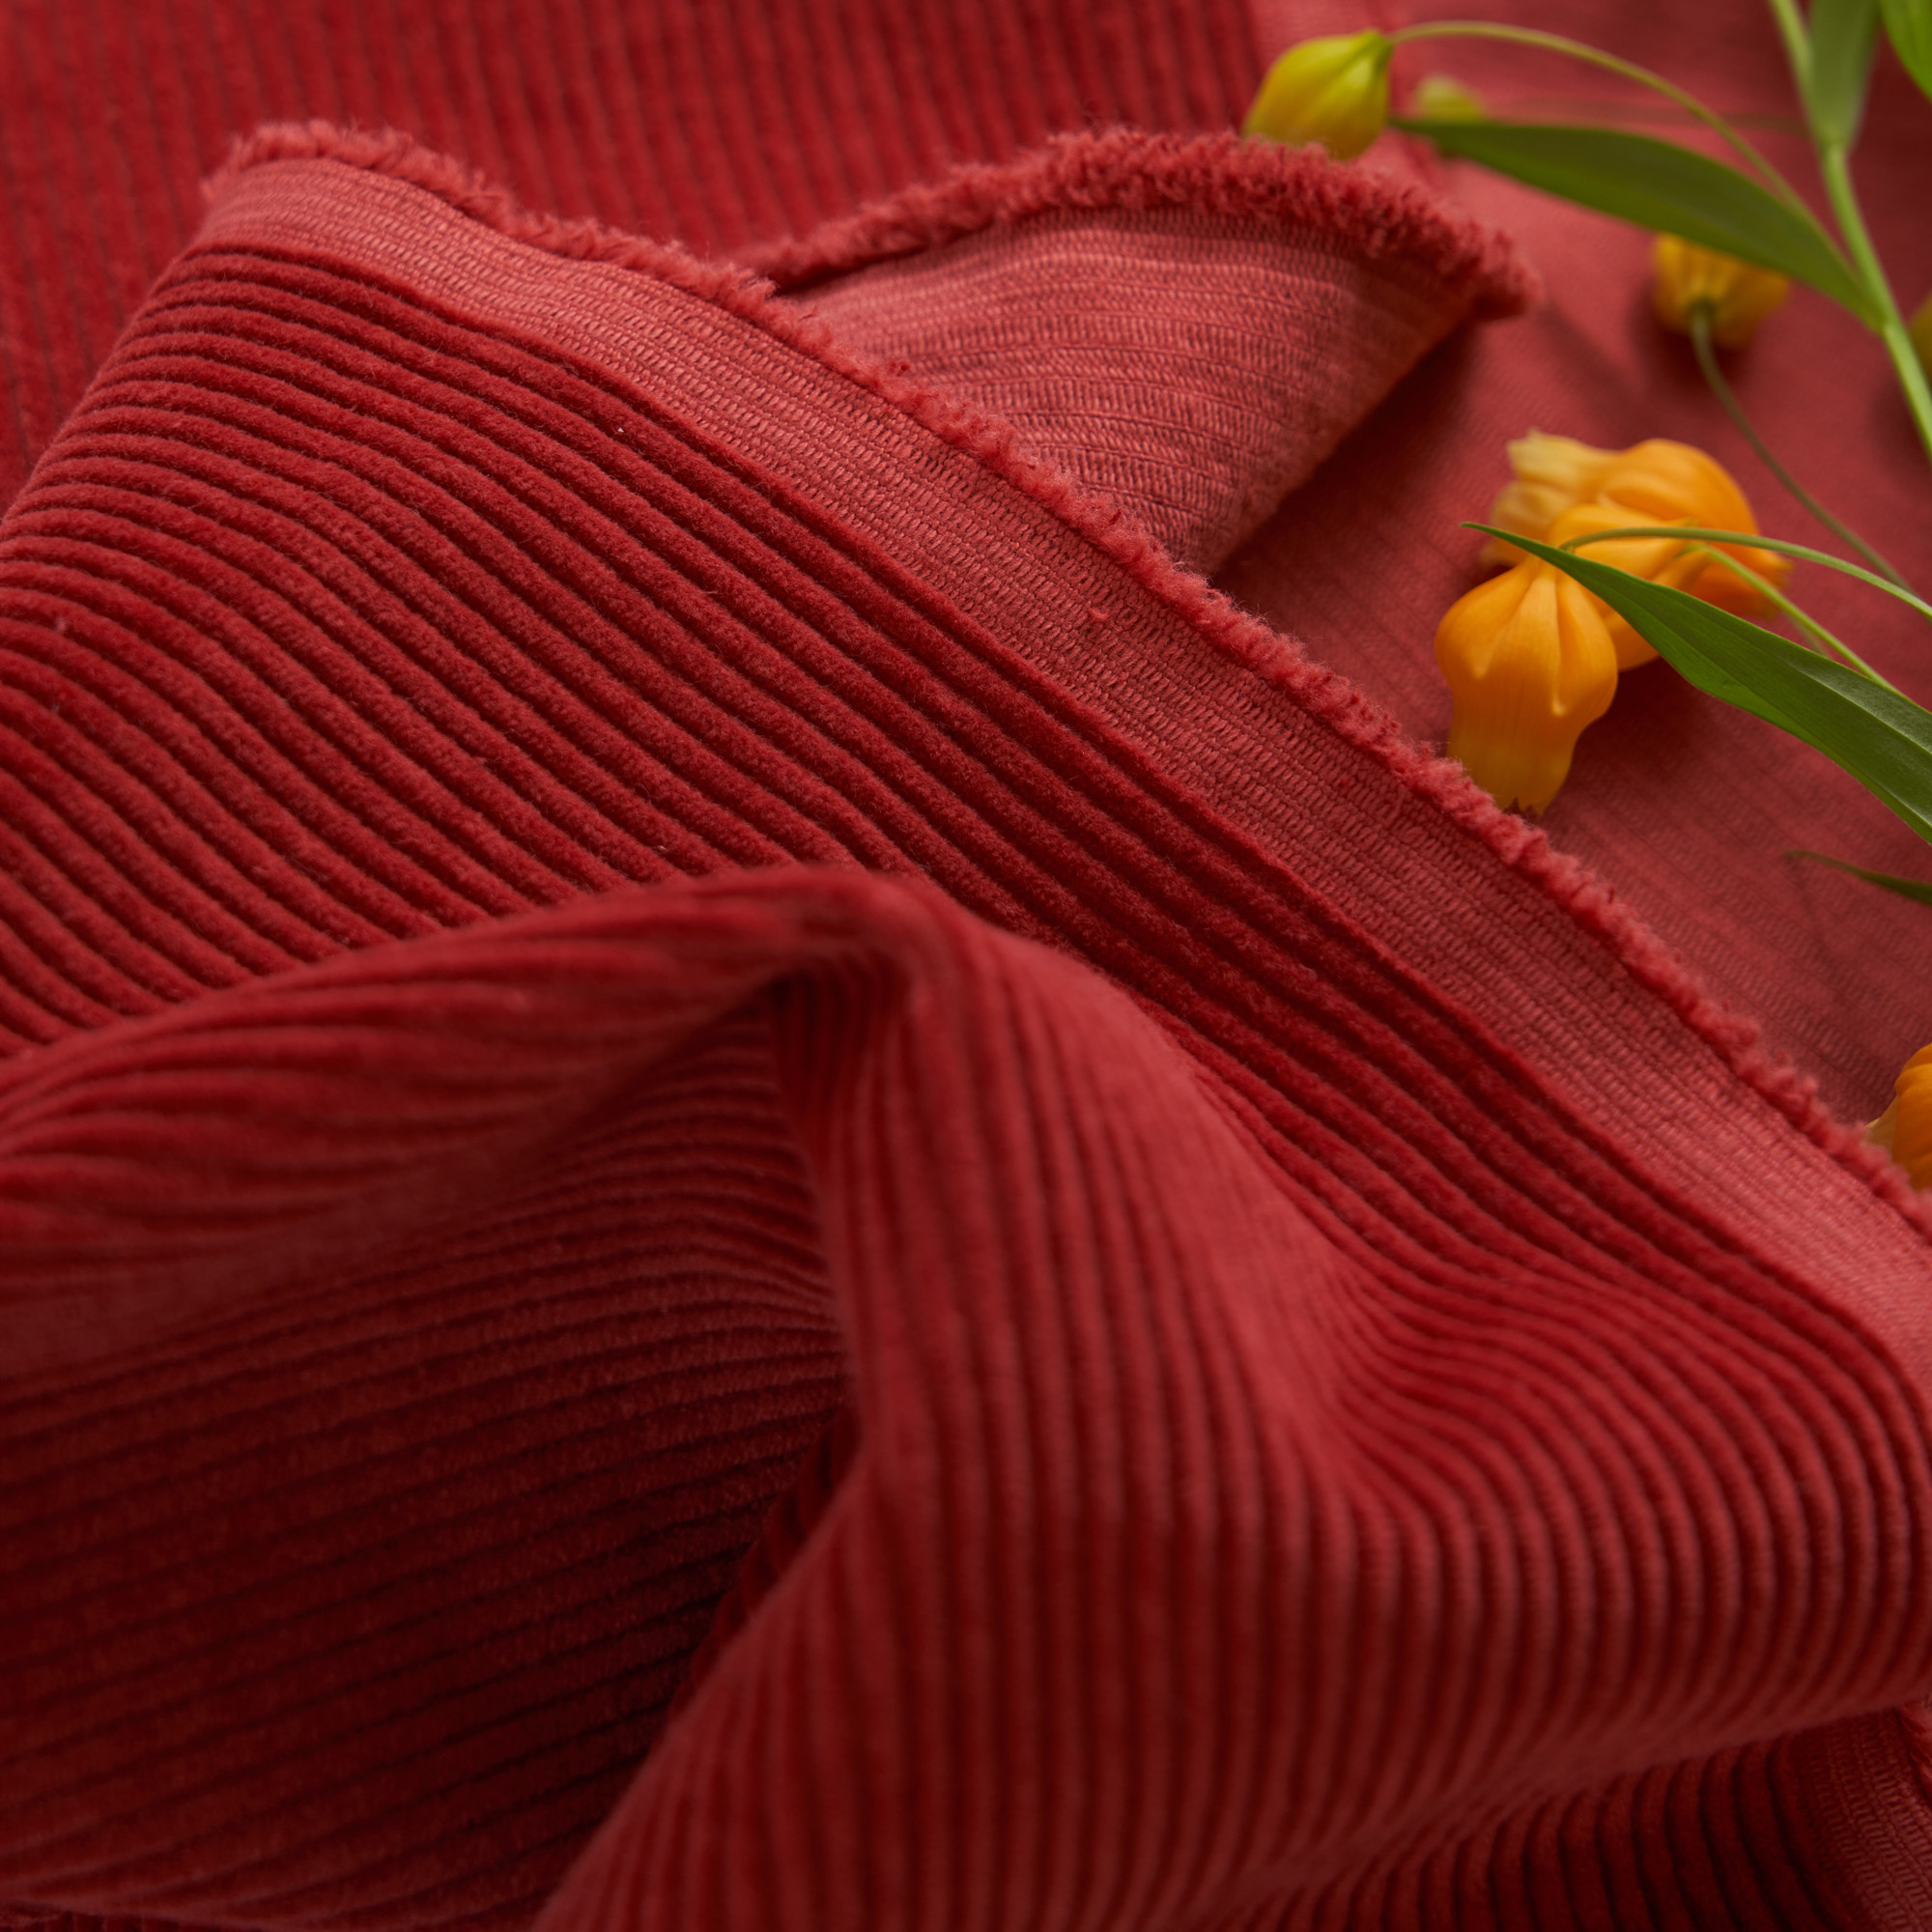 【树莓】秋冬加厚砂洗全棉红色灯芯绒风衣外套裤子马甲服装面料